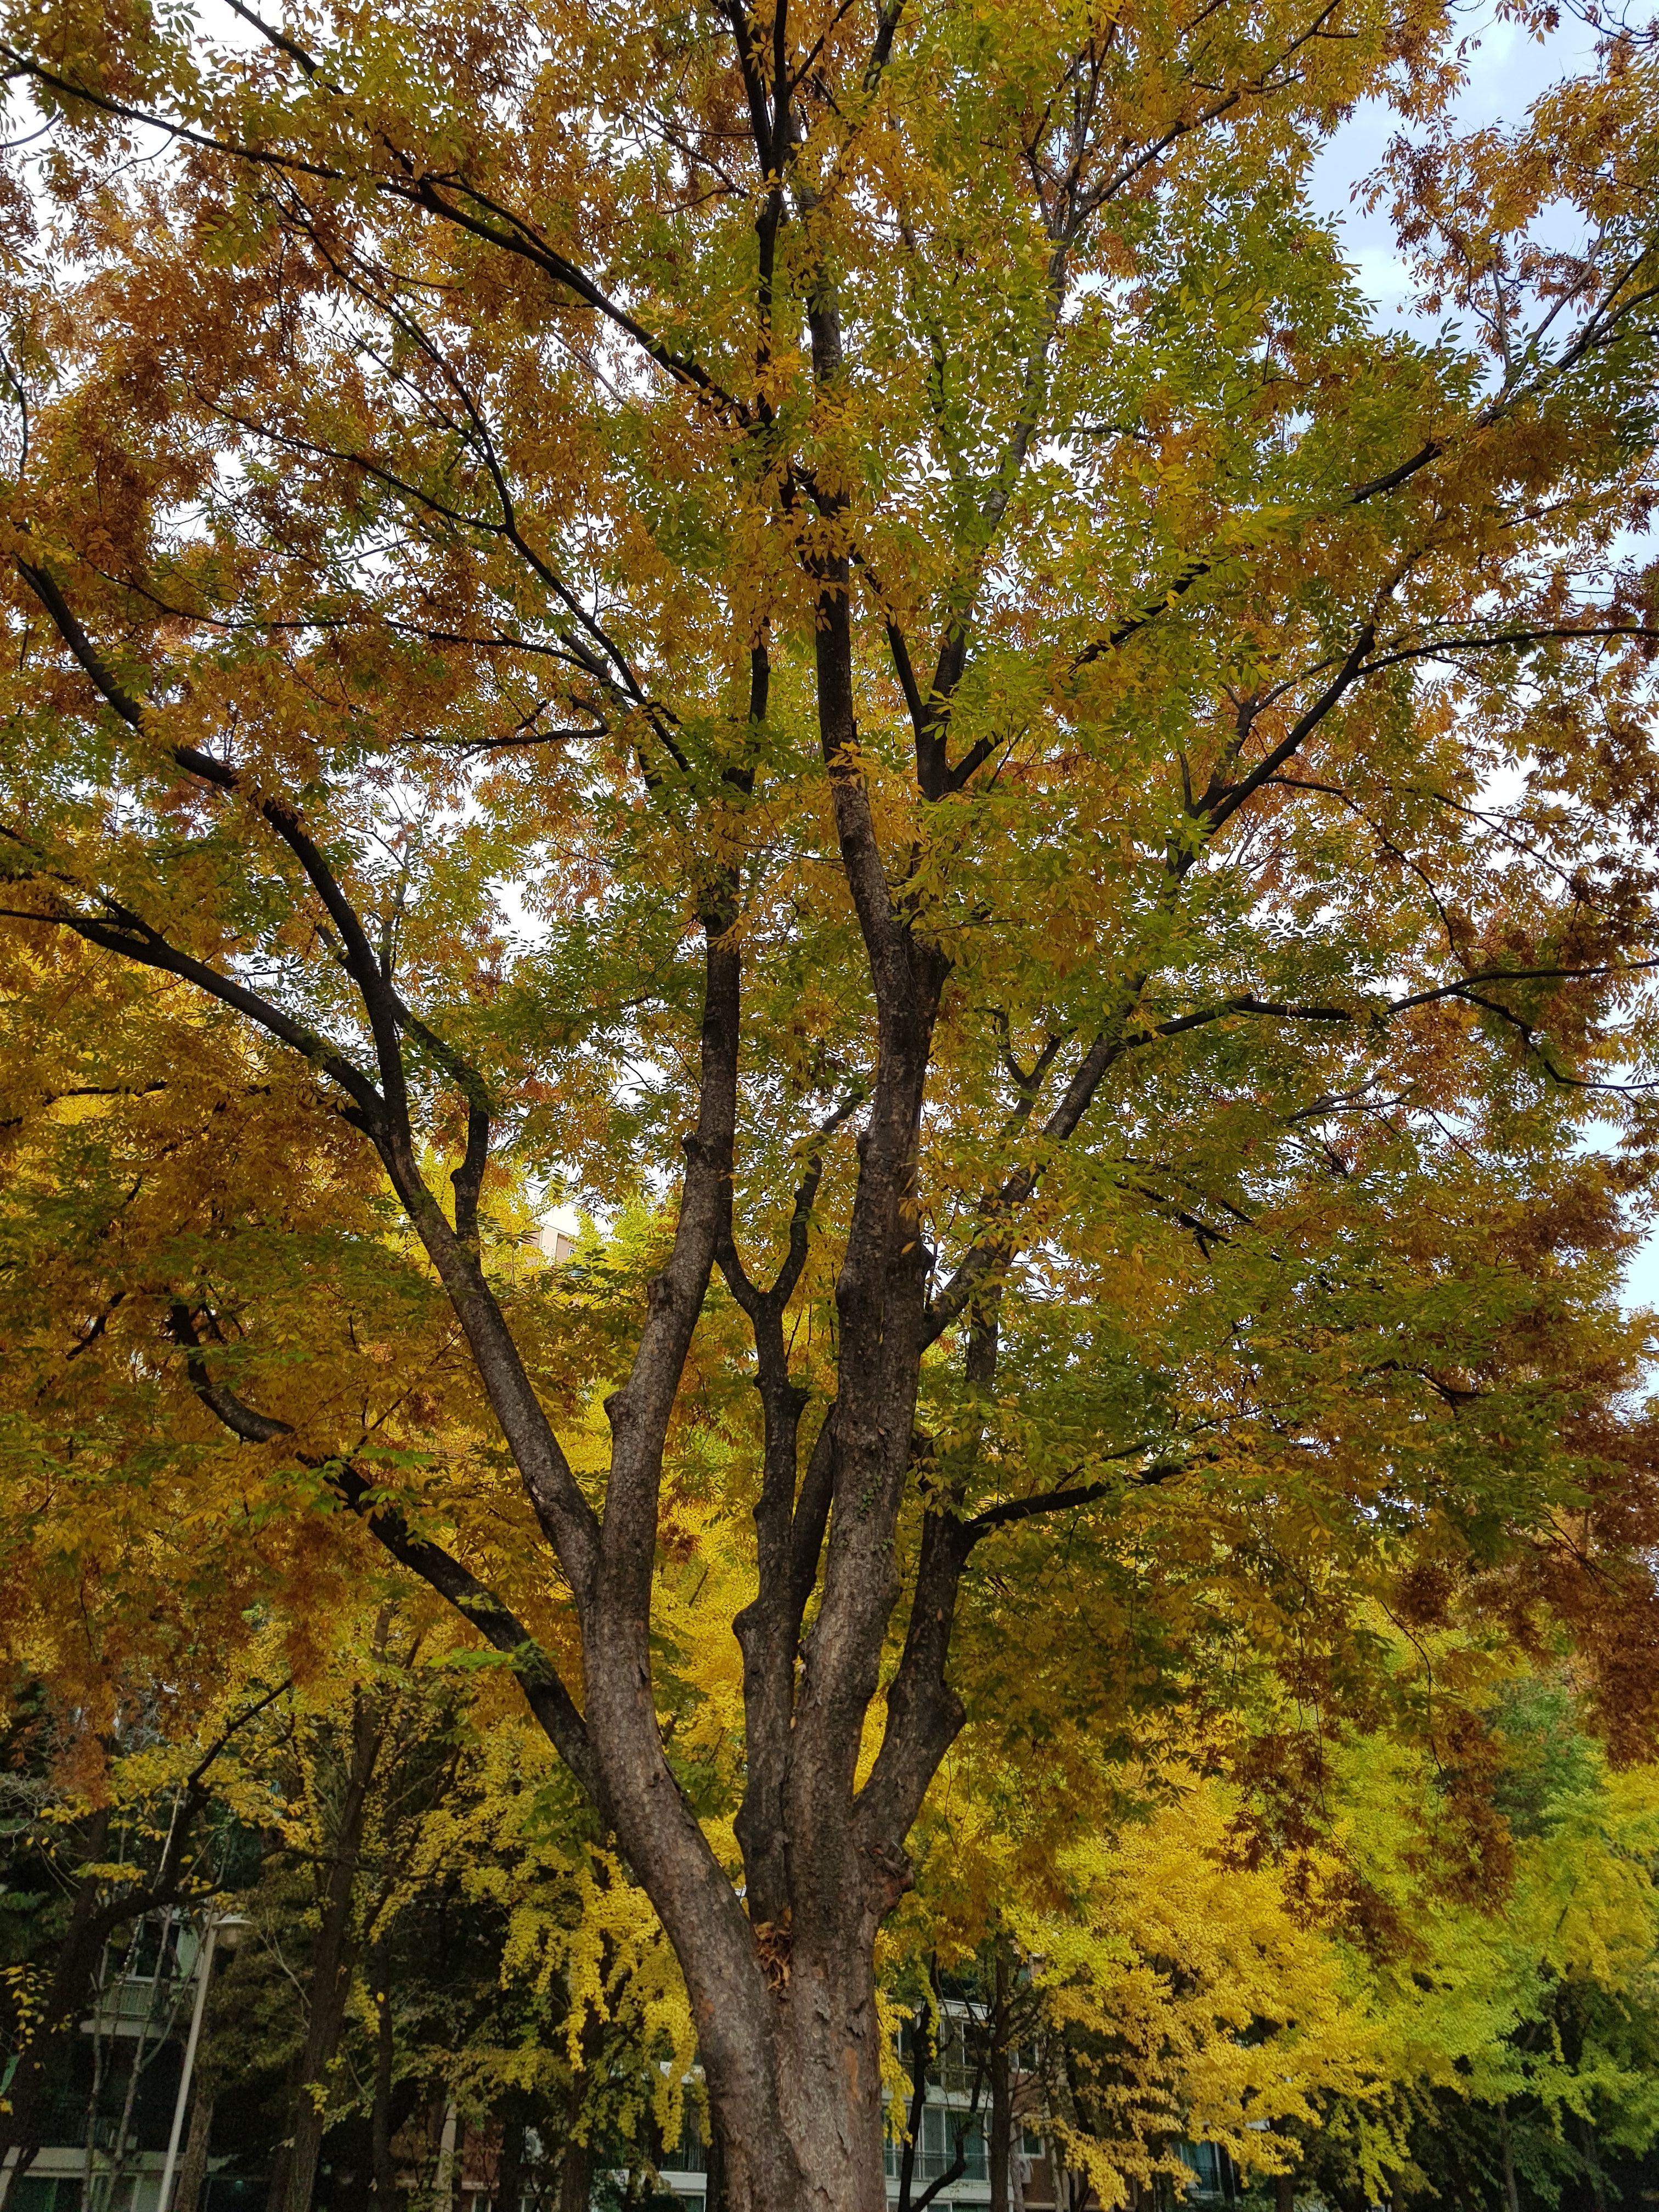 커다란 나무가 가을을 맞아 단풍으로 물들어 가고 있는 모습